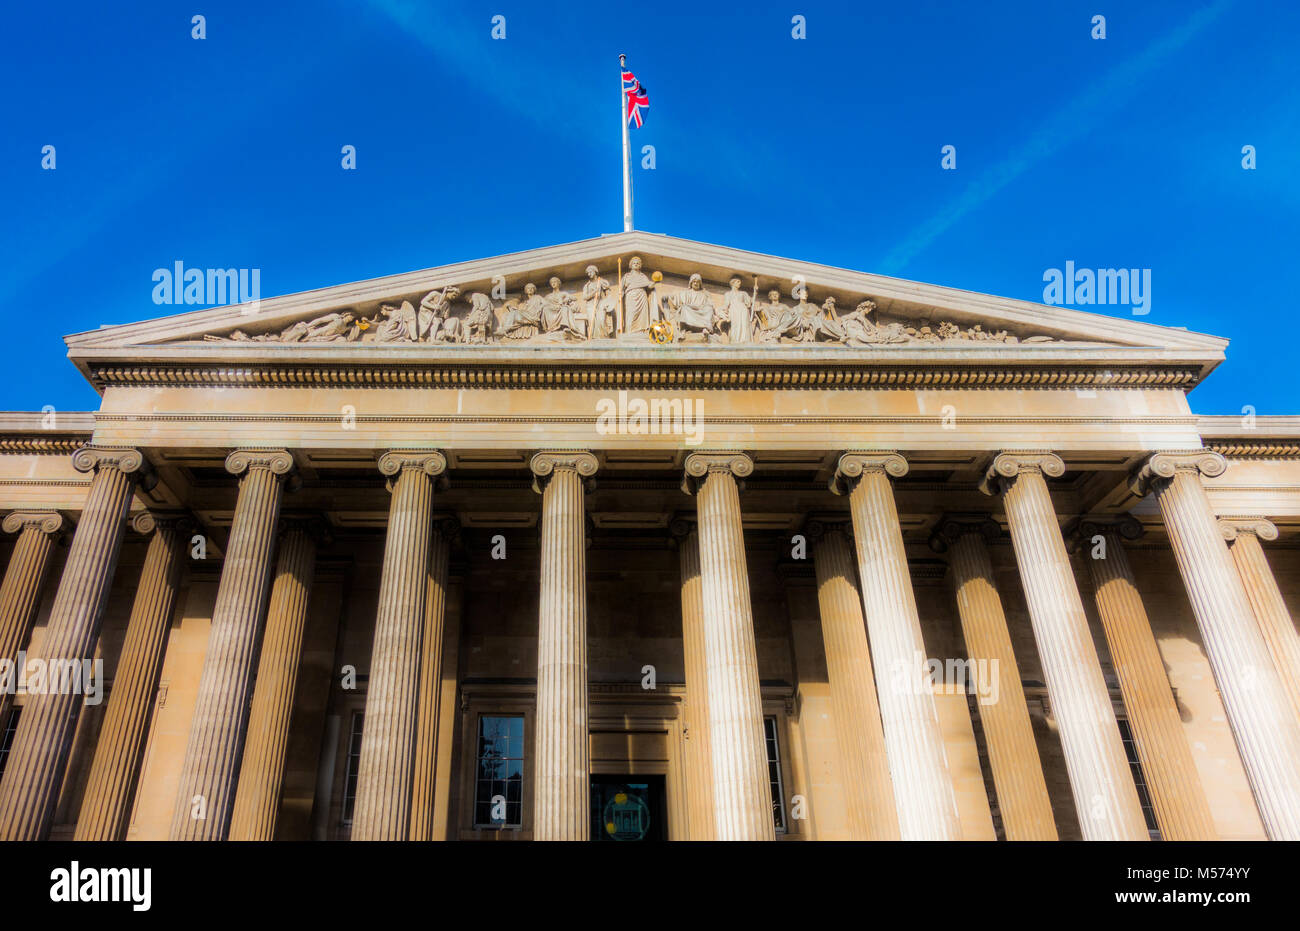 Nahaufnahme des Portikus und Giebel Skulpturen am Haupteingang des British Museum (für die menschliche Geschichte, Kunst und Kultur). London, England, UK. Stockfoto